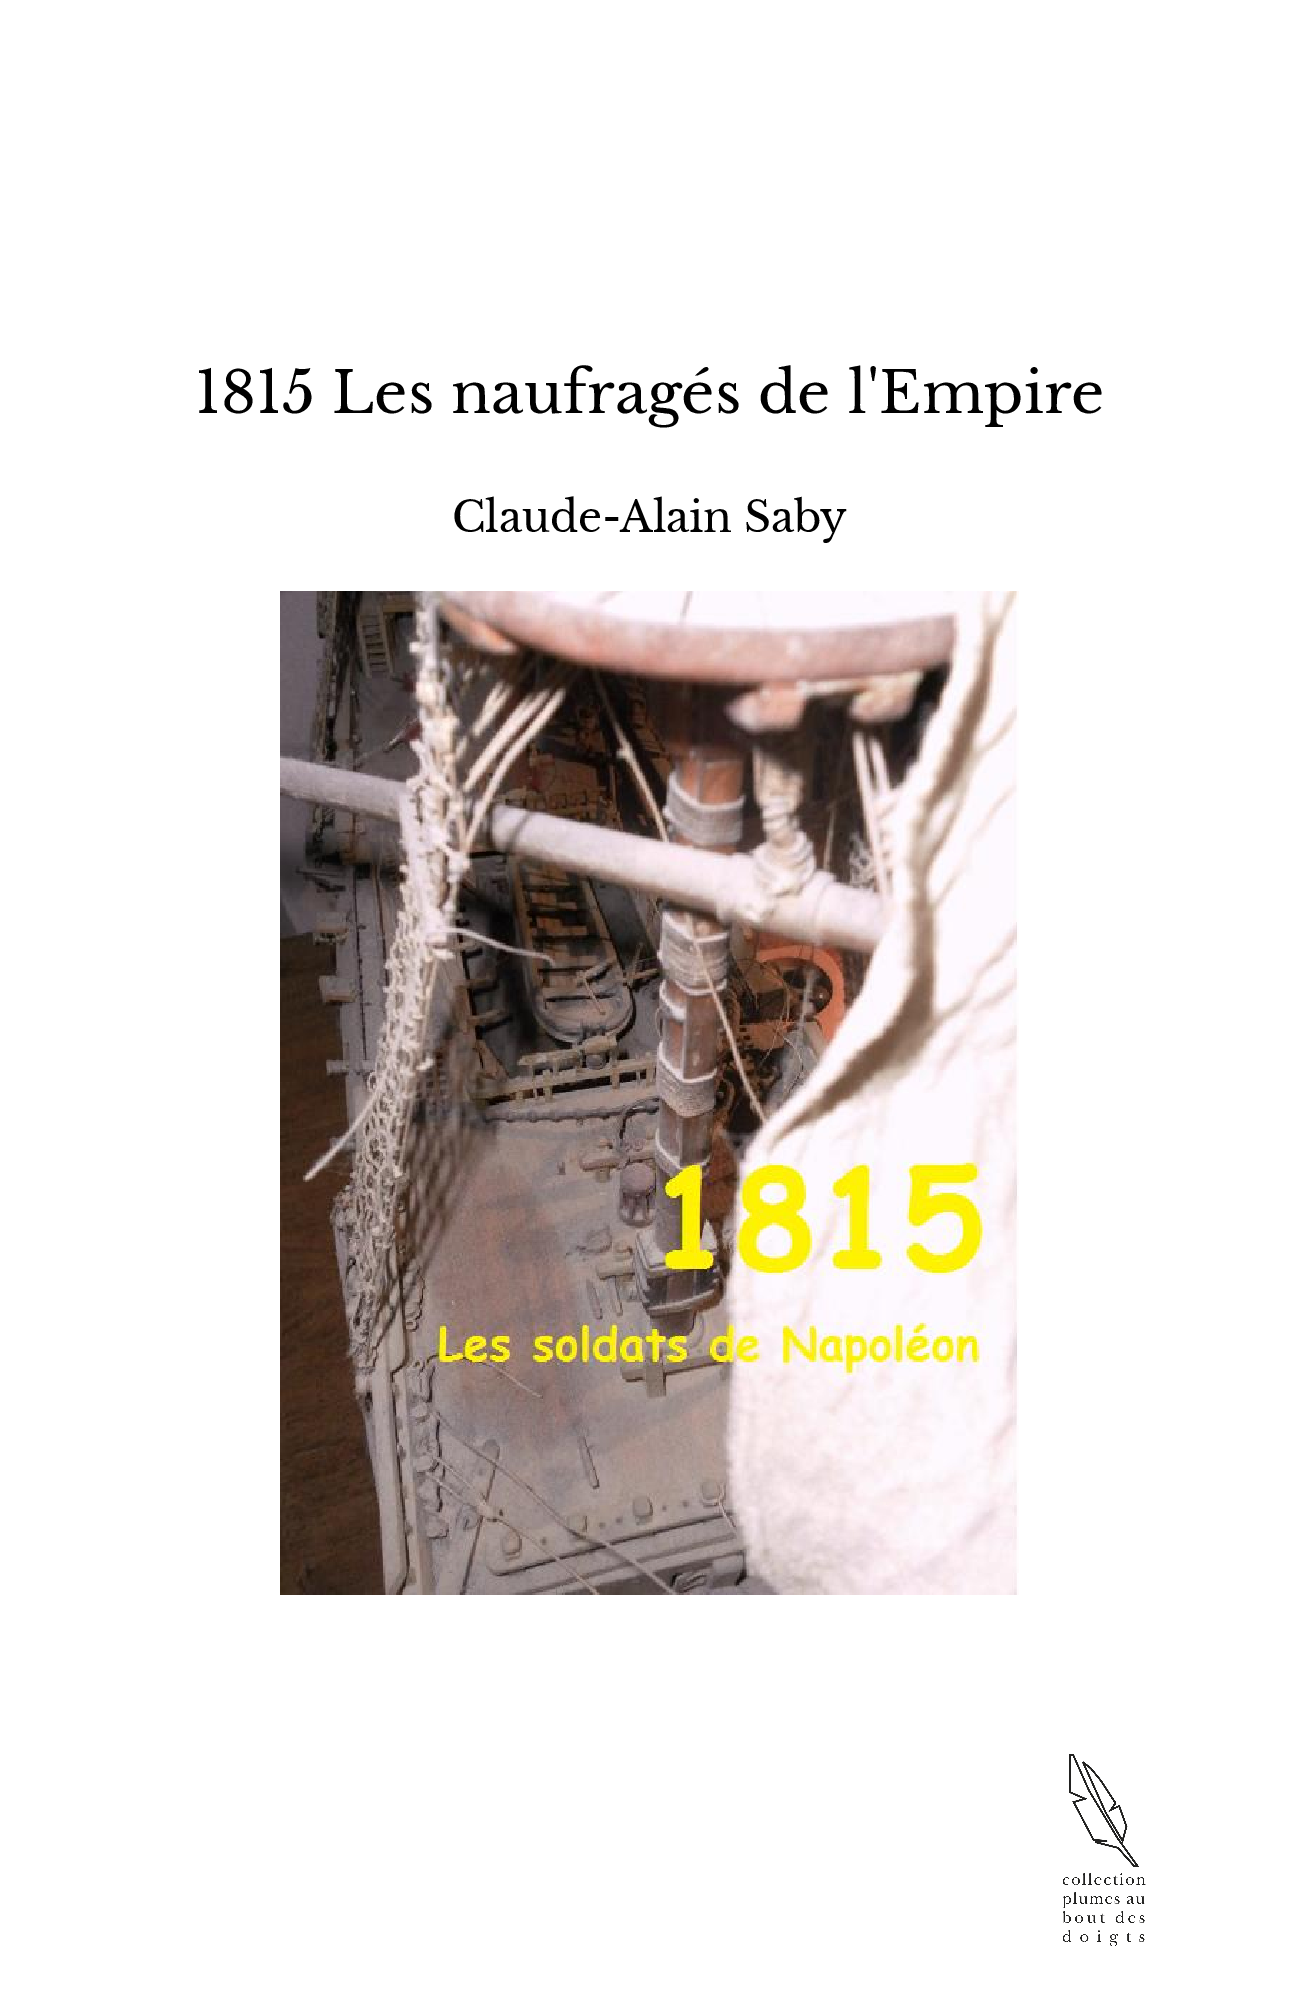 1815 Les naufragés de l'Empire - Claude-Alain Saby